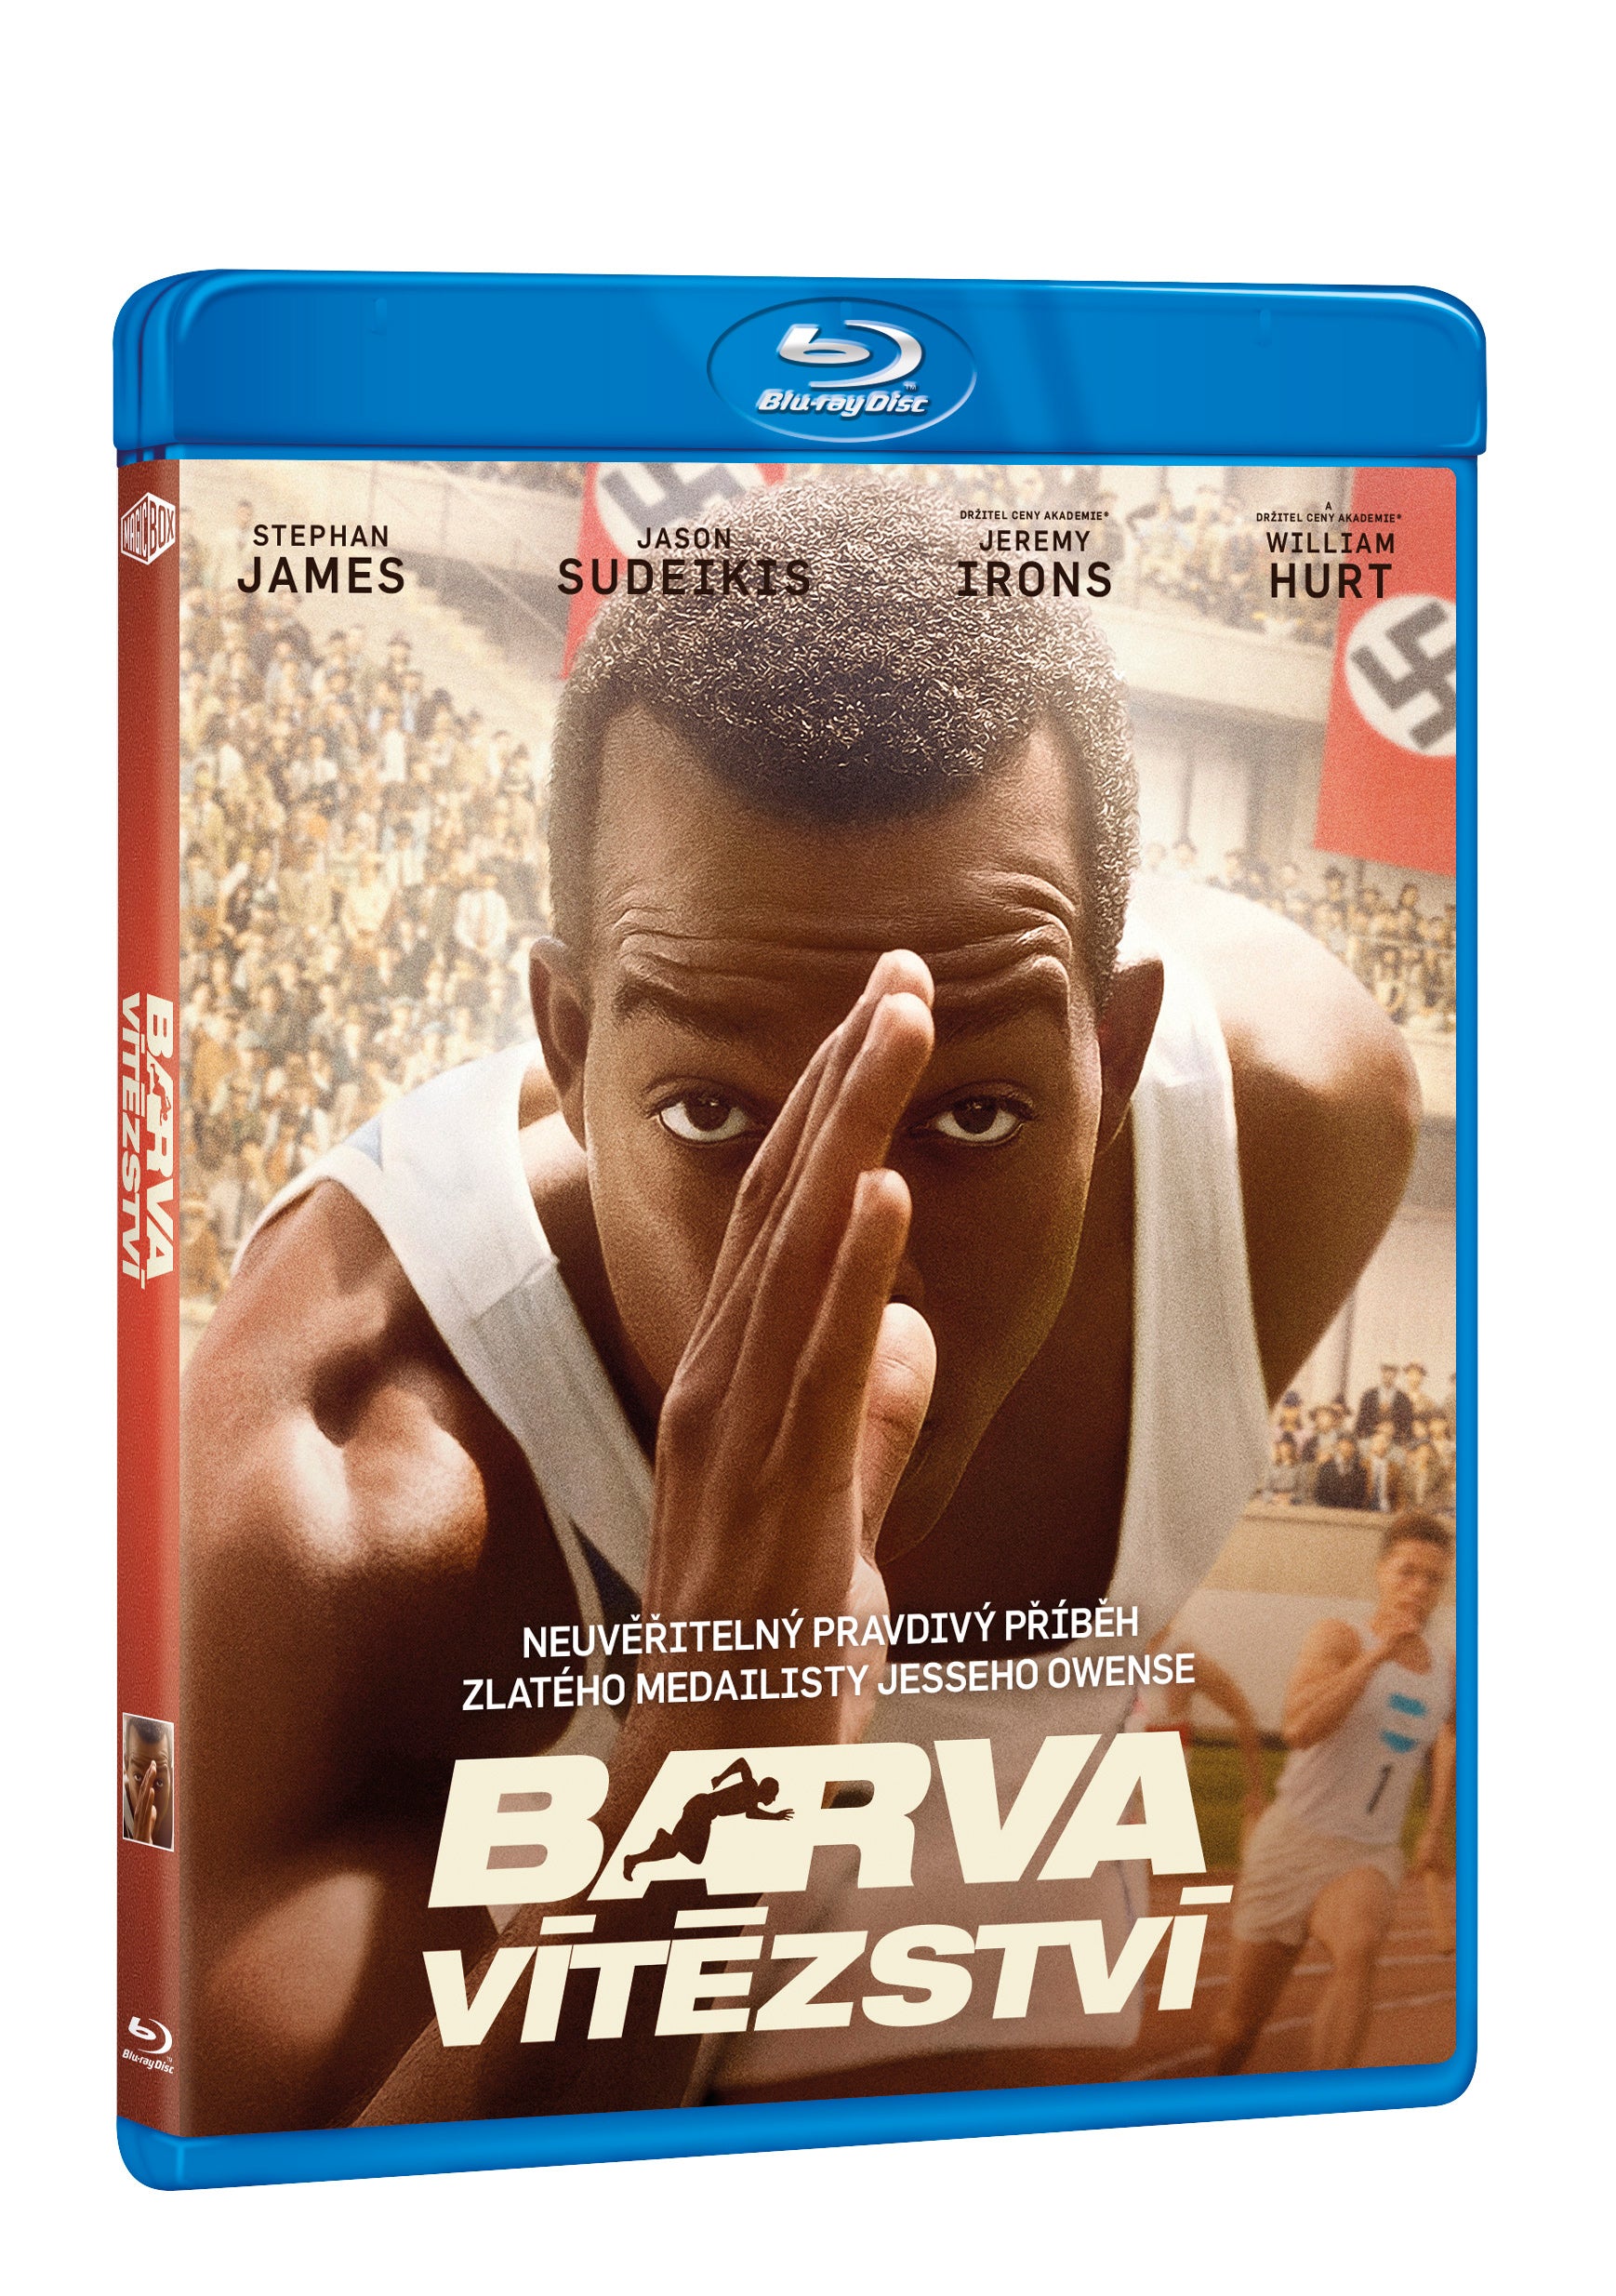 Barva vitezstvi BD / Race - Czech version